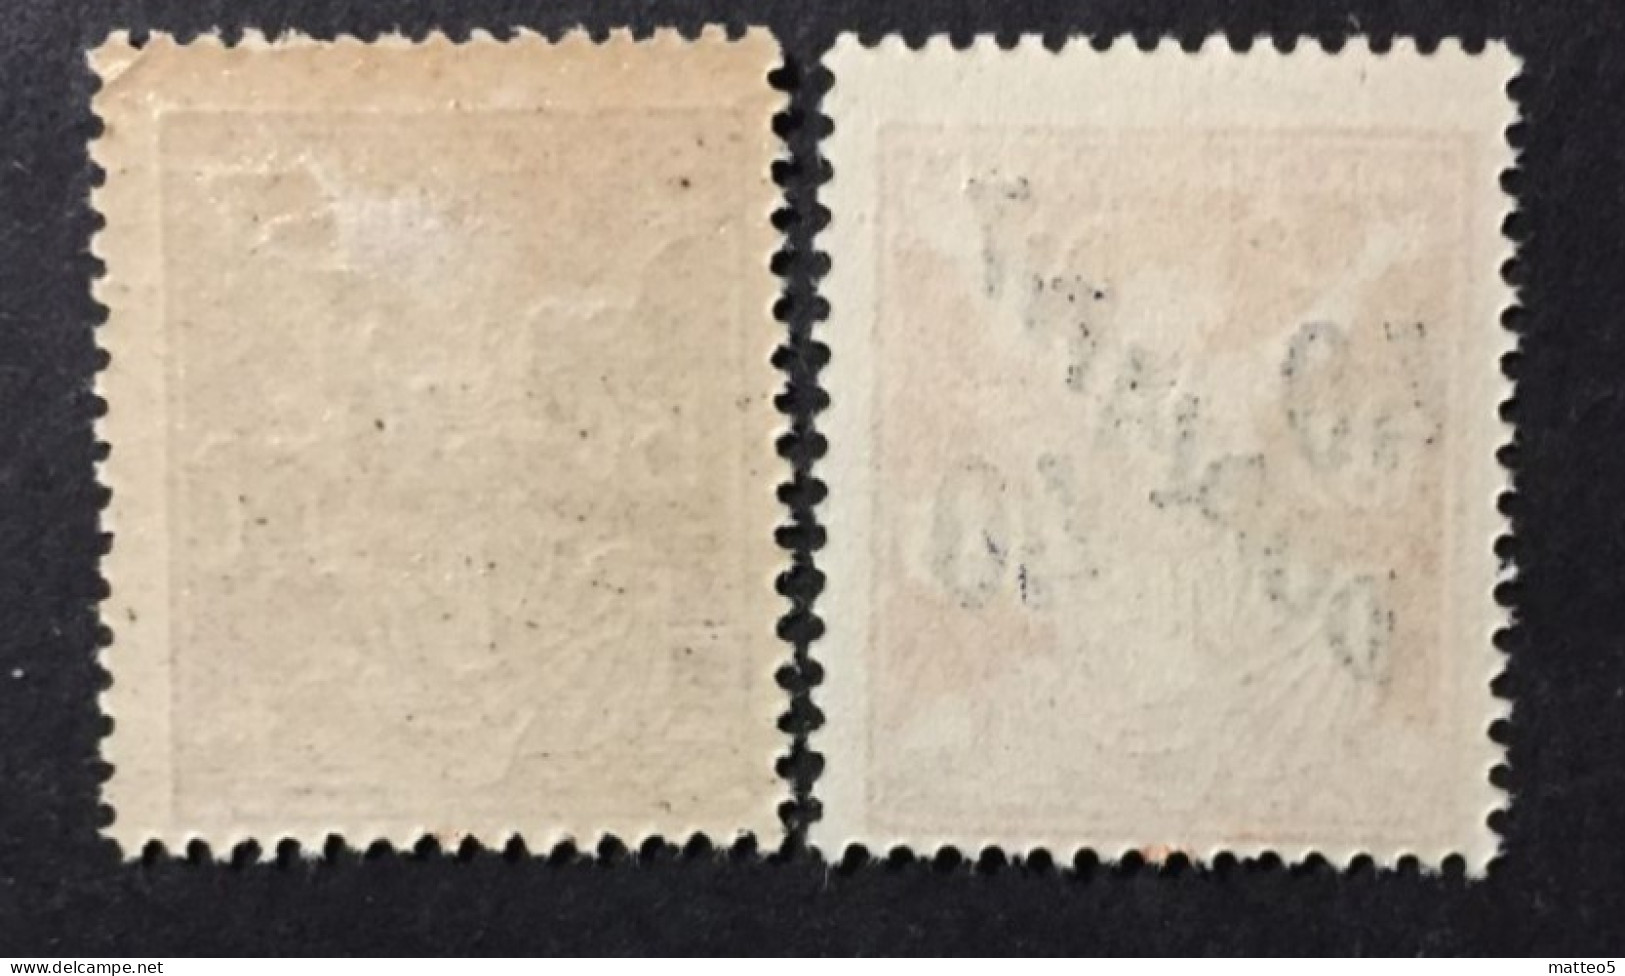 1920 /27  Czechoslovakia - Postage Due Stamps Overprint DOPLATIT - Unused - Ongebruikt